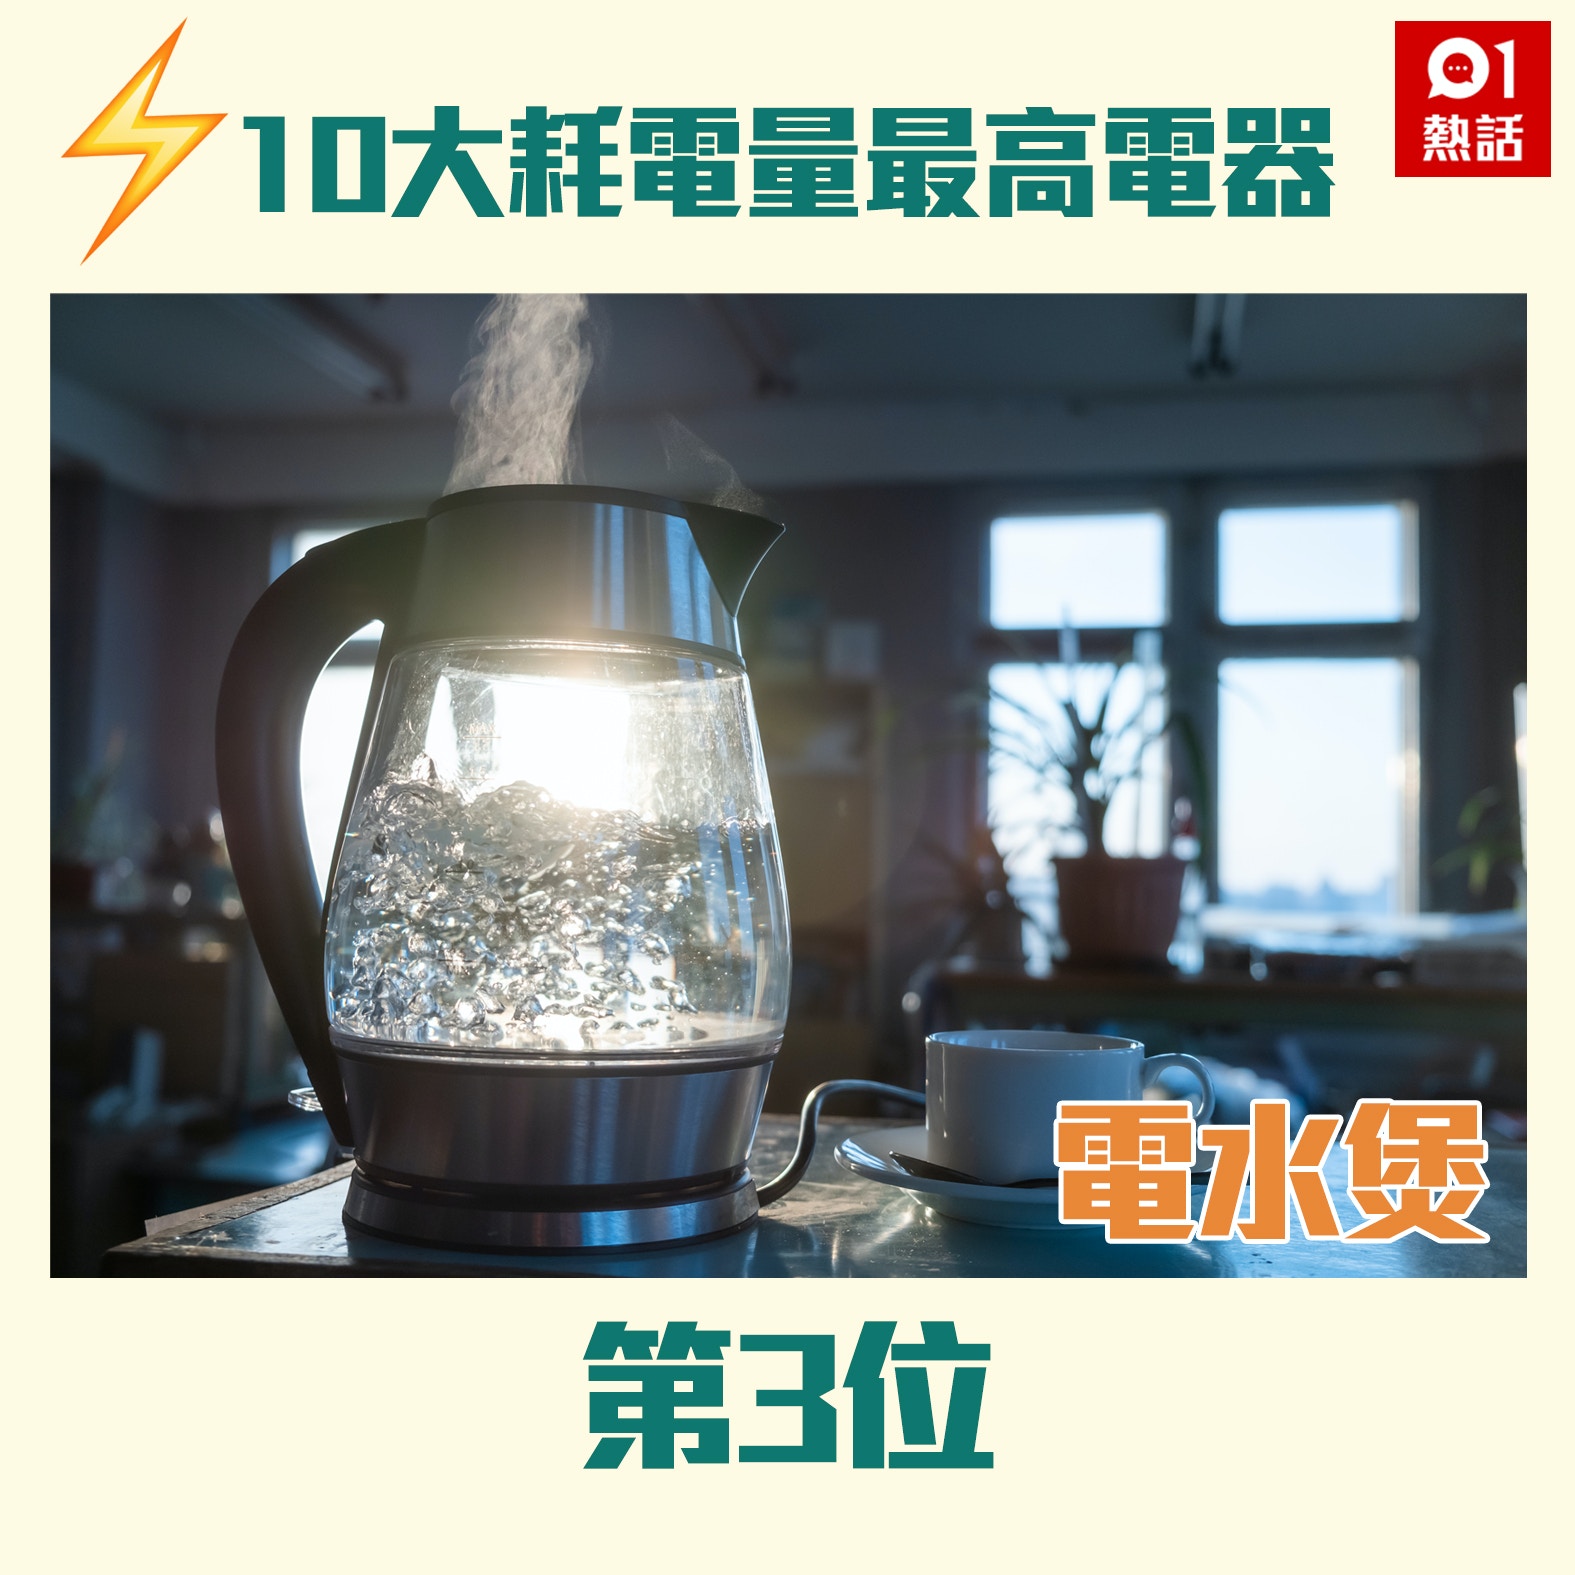 【10大耗电量最高电器】第3位：电水煲（Getty Images／01热话制图）